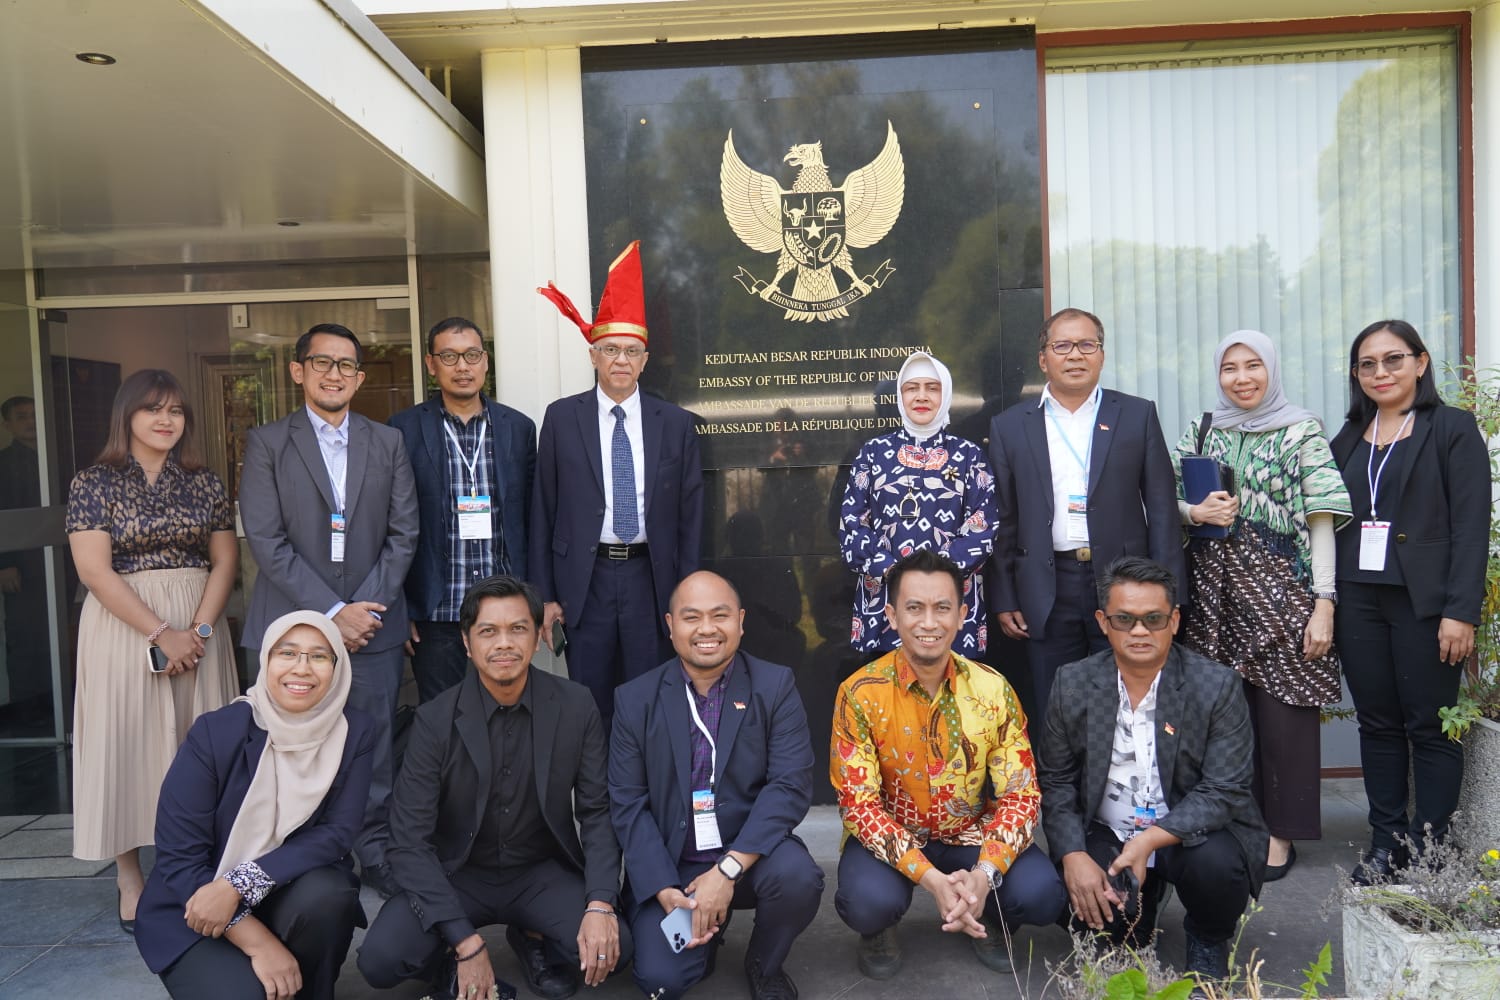 Wali Kota Makassar Kunjungi KBRI Belgia, Dubes: Danny Pomanto Pemimpin Visioner dan Inovatif